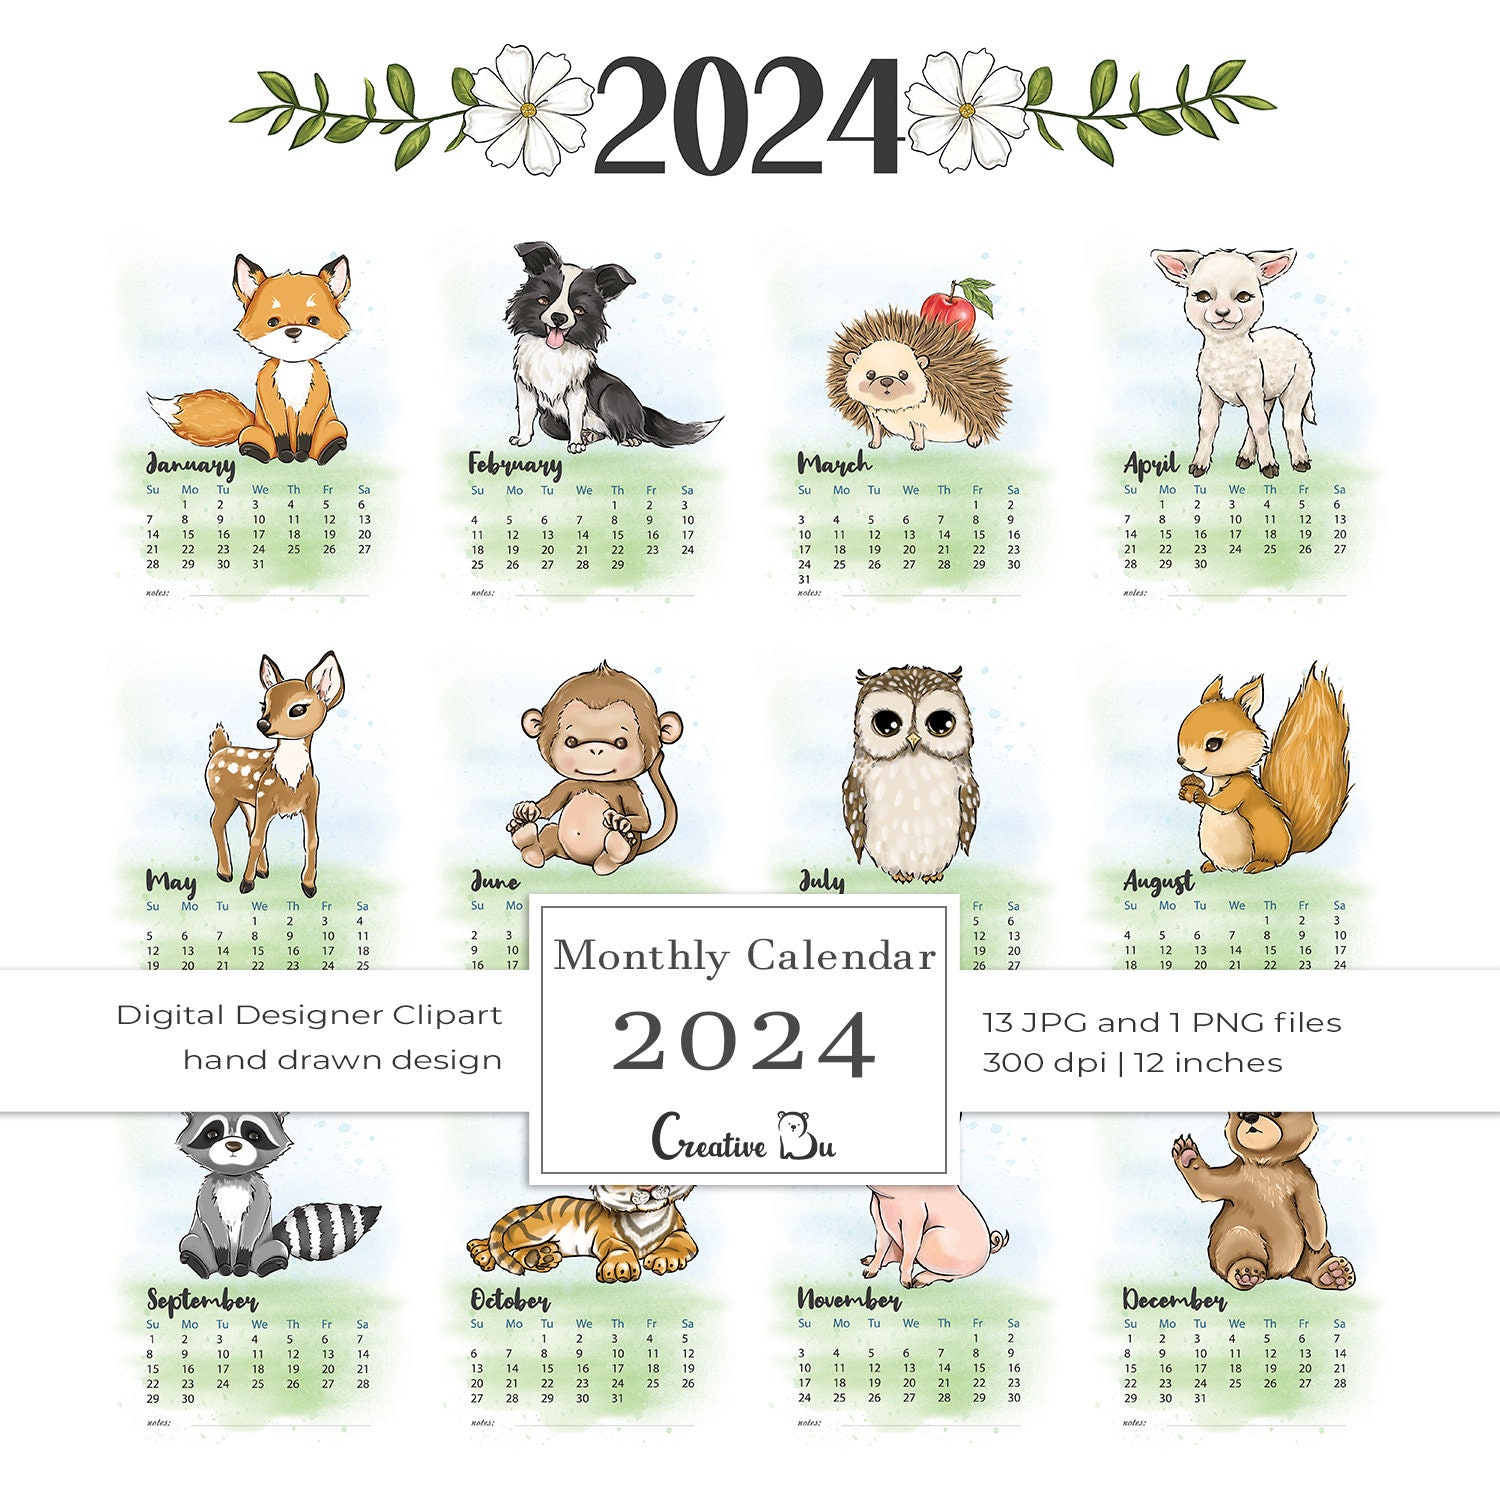 Le derrière de l'animal Calendrier 2024 - 2025: Calendrier sur trois ans,  30 images mettant en valeur les magnifiques arrières de différents animaux